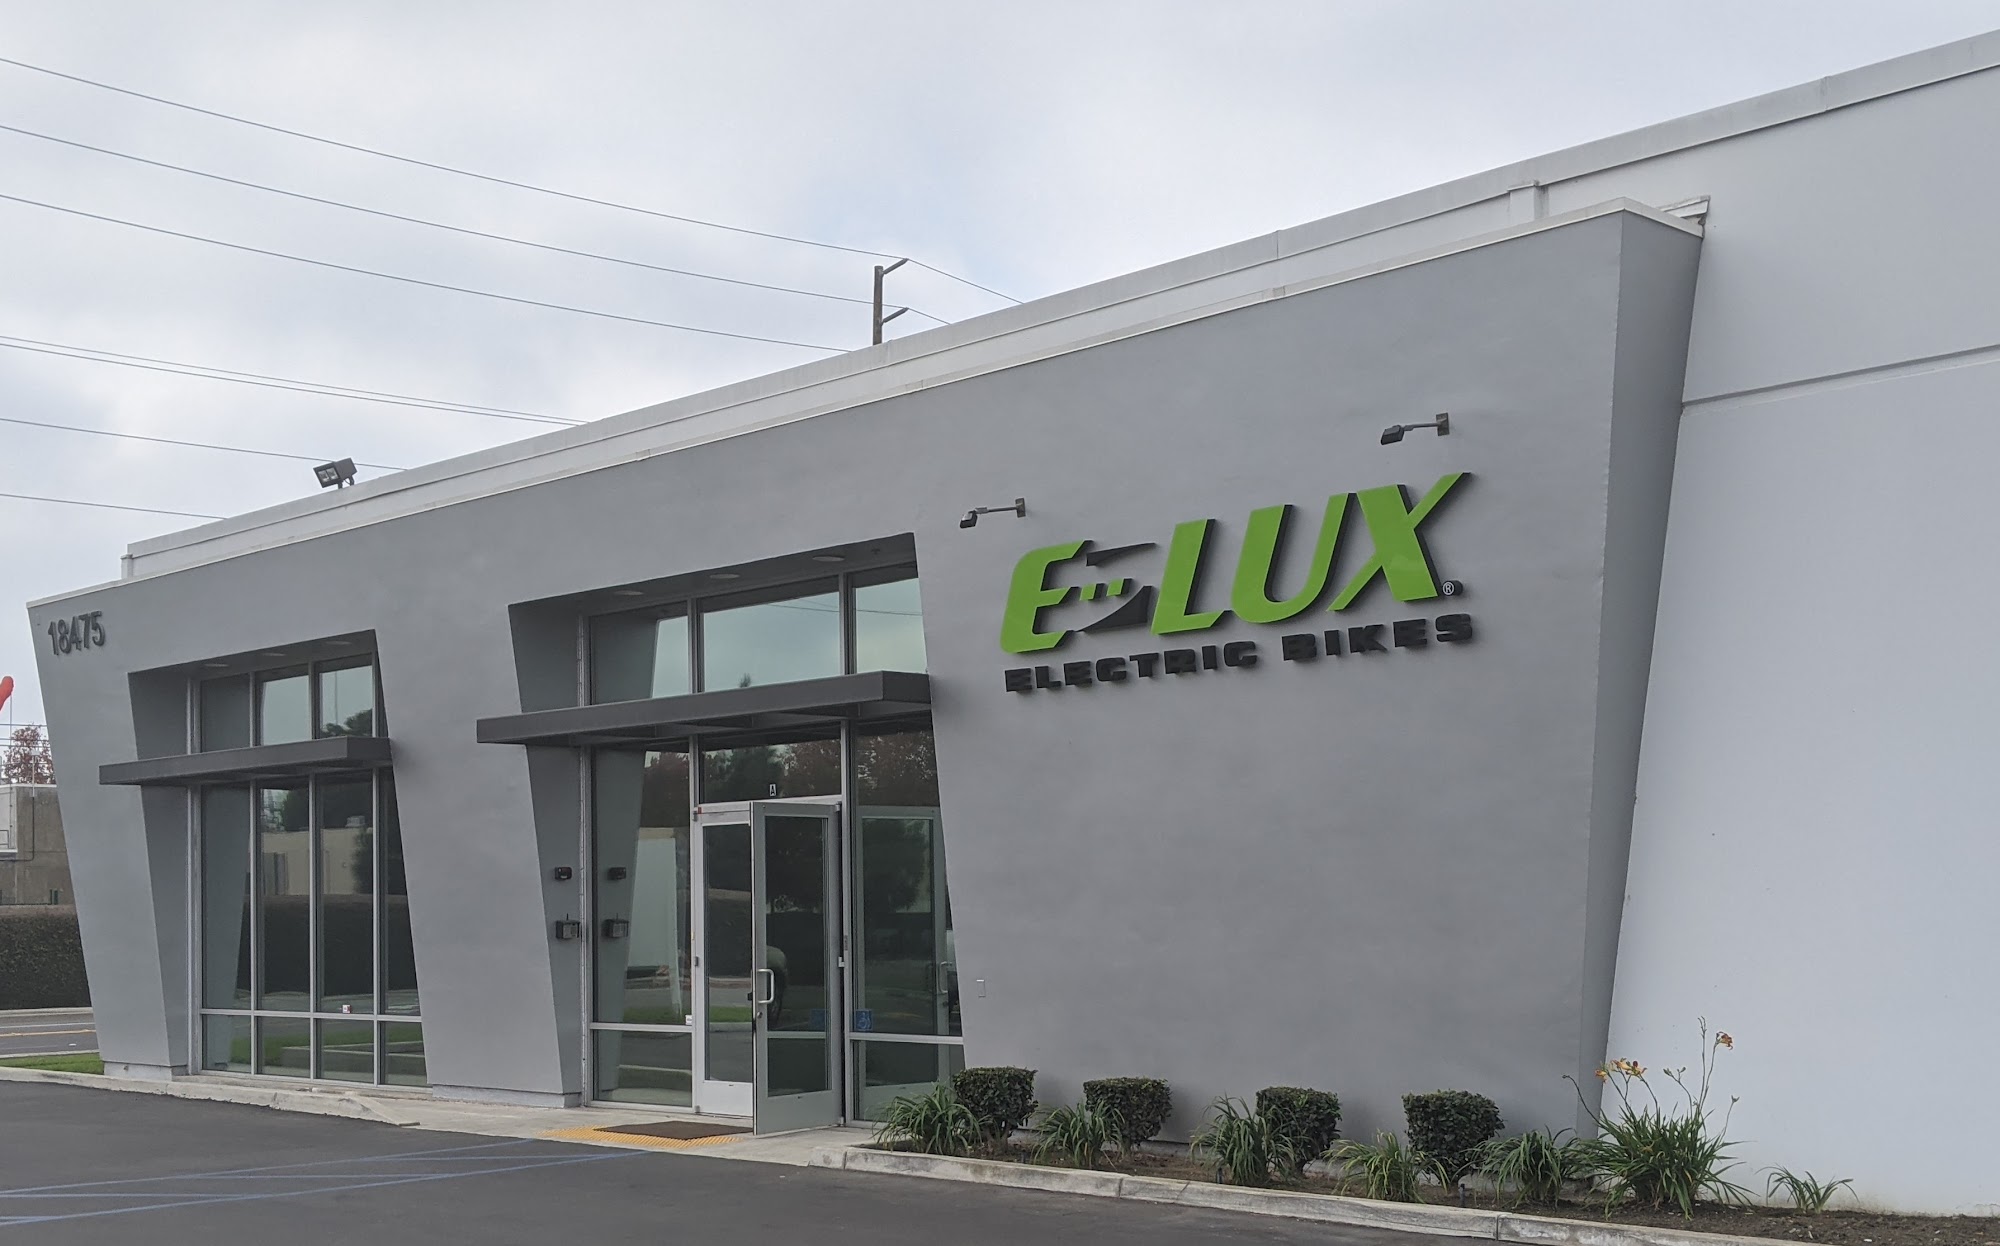 E-LUX Electric Bikes